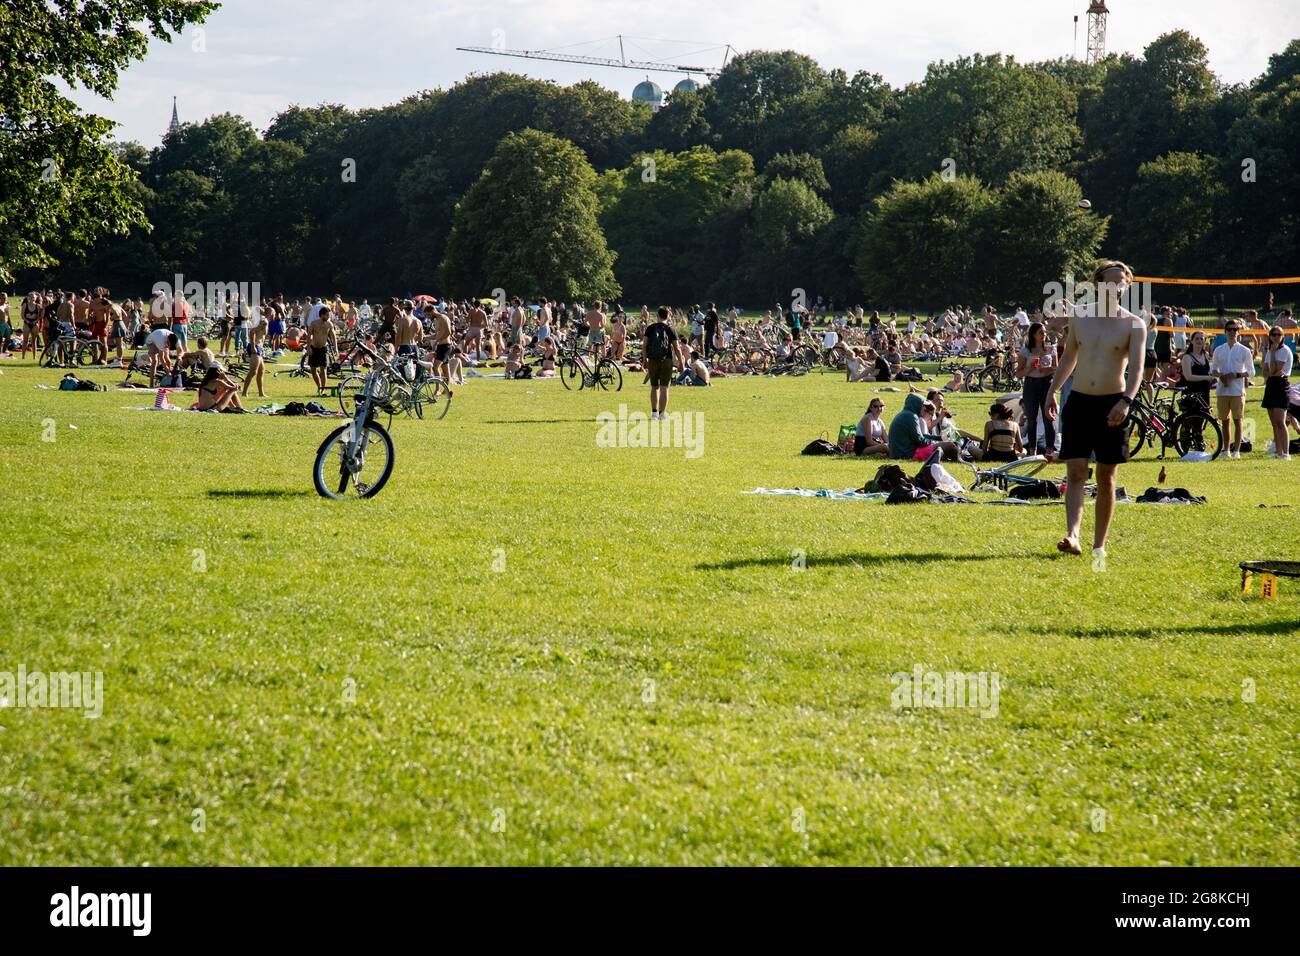 Viele Menschen genießen trotz steigenden Covid-19 Zahlen in Massen das schöne und heiße Wetter am 27. Juni 2020 im Englischen Garten in München. (Photo by Alexander Pohl/Sipa USA) Stock Photo